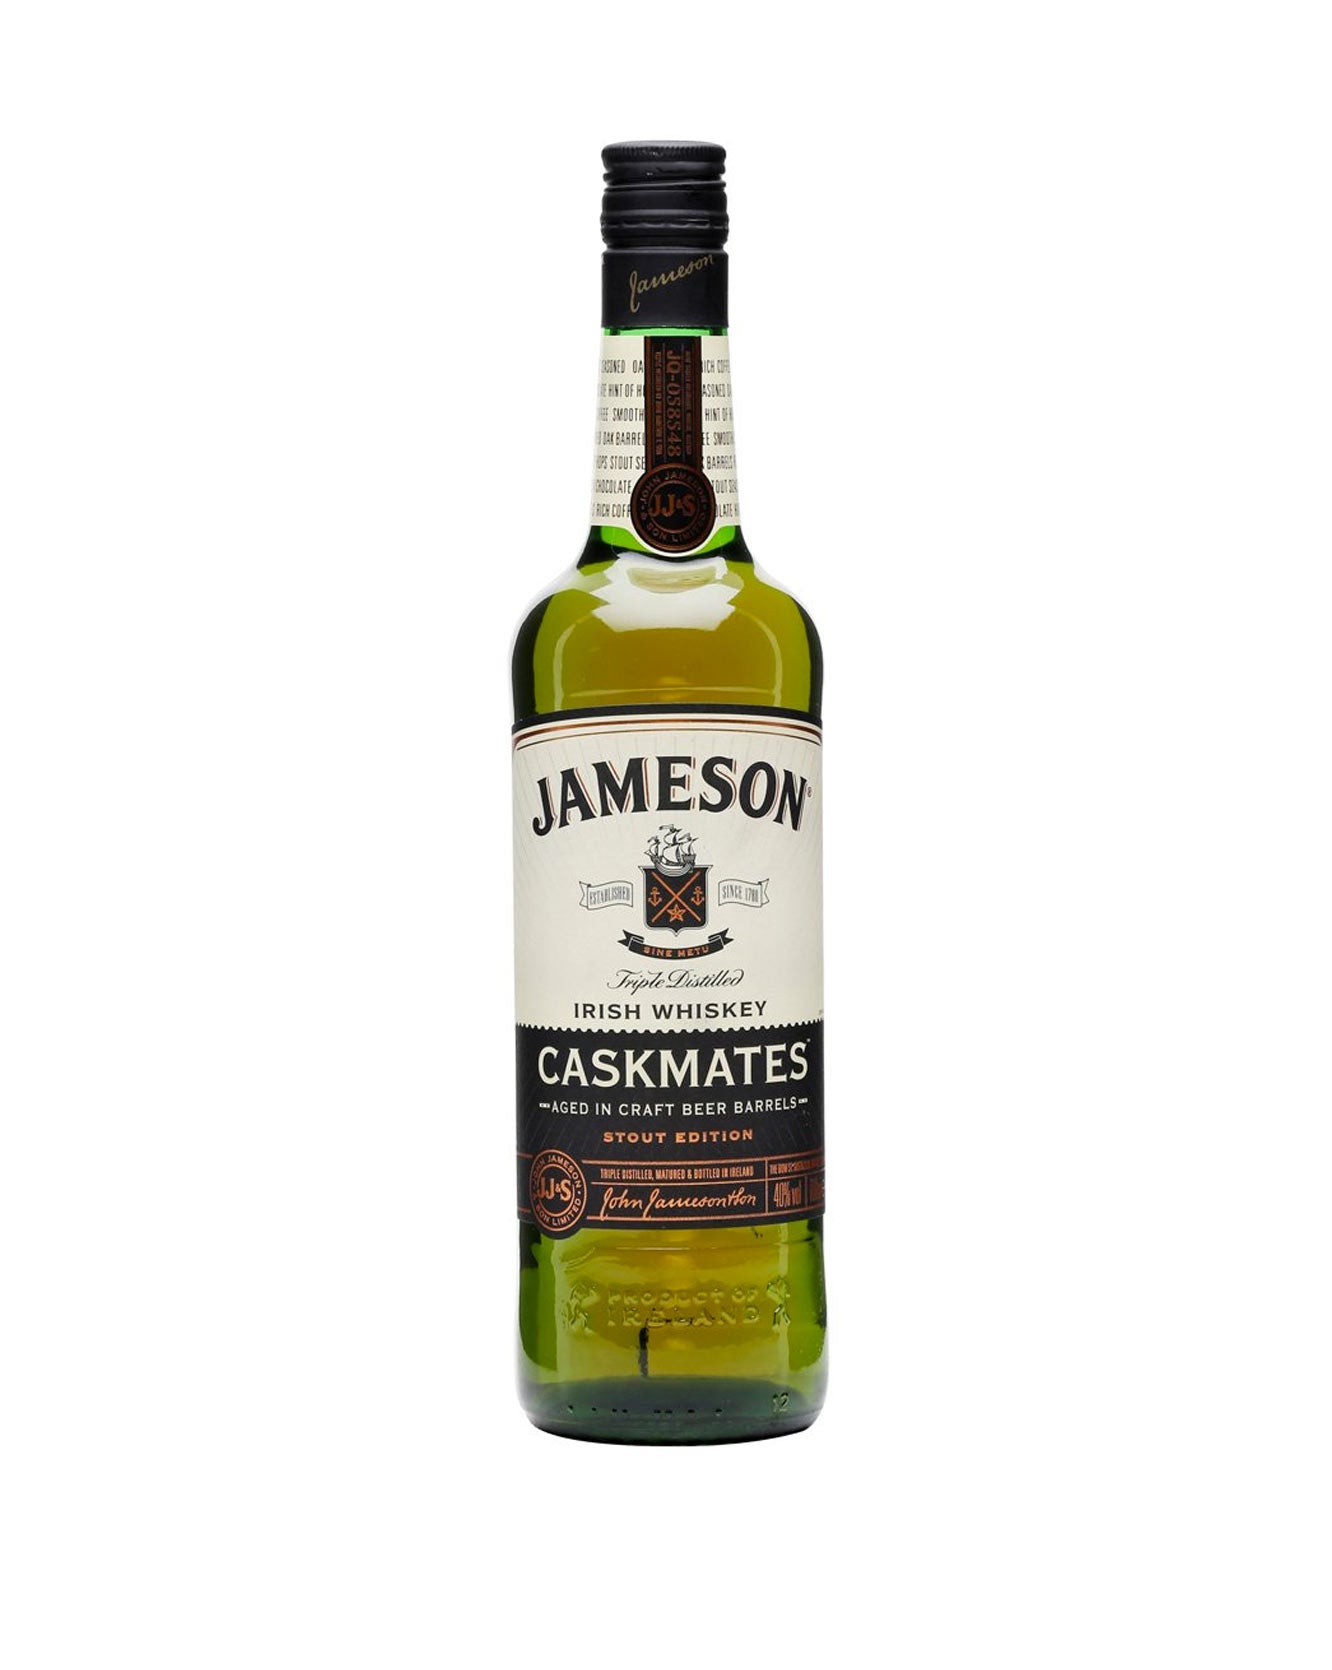 Jameson Caskmates - Stout edition